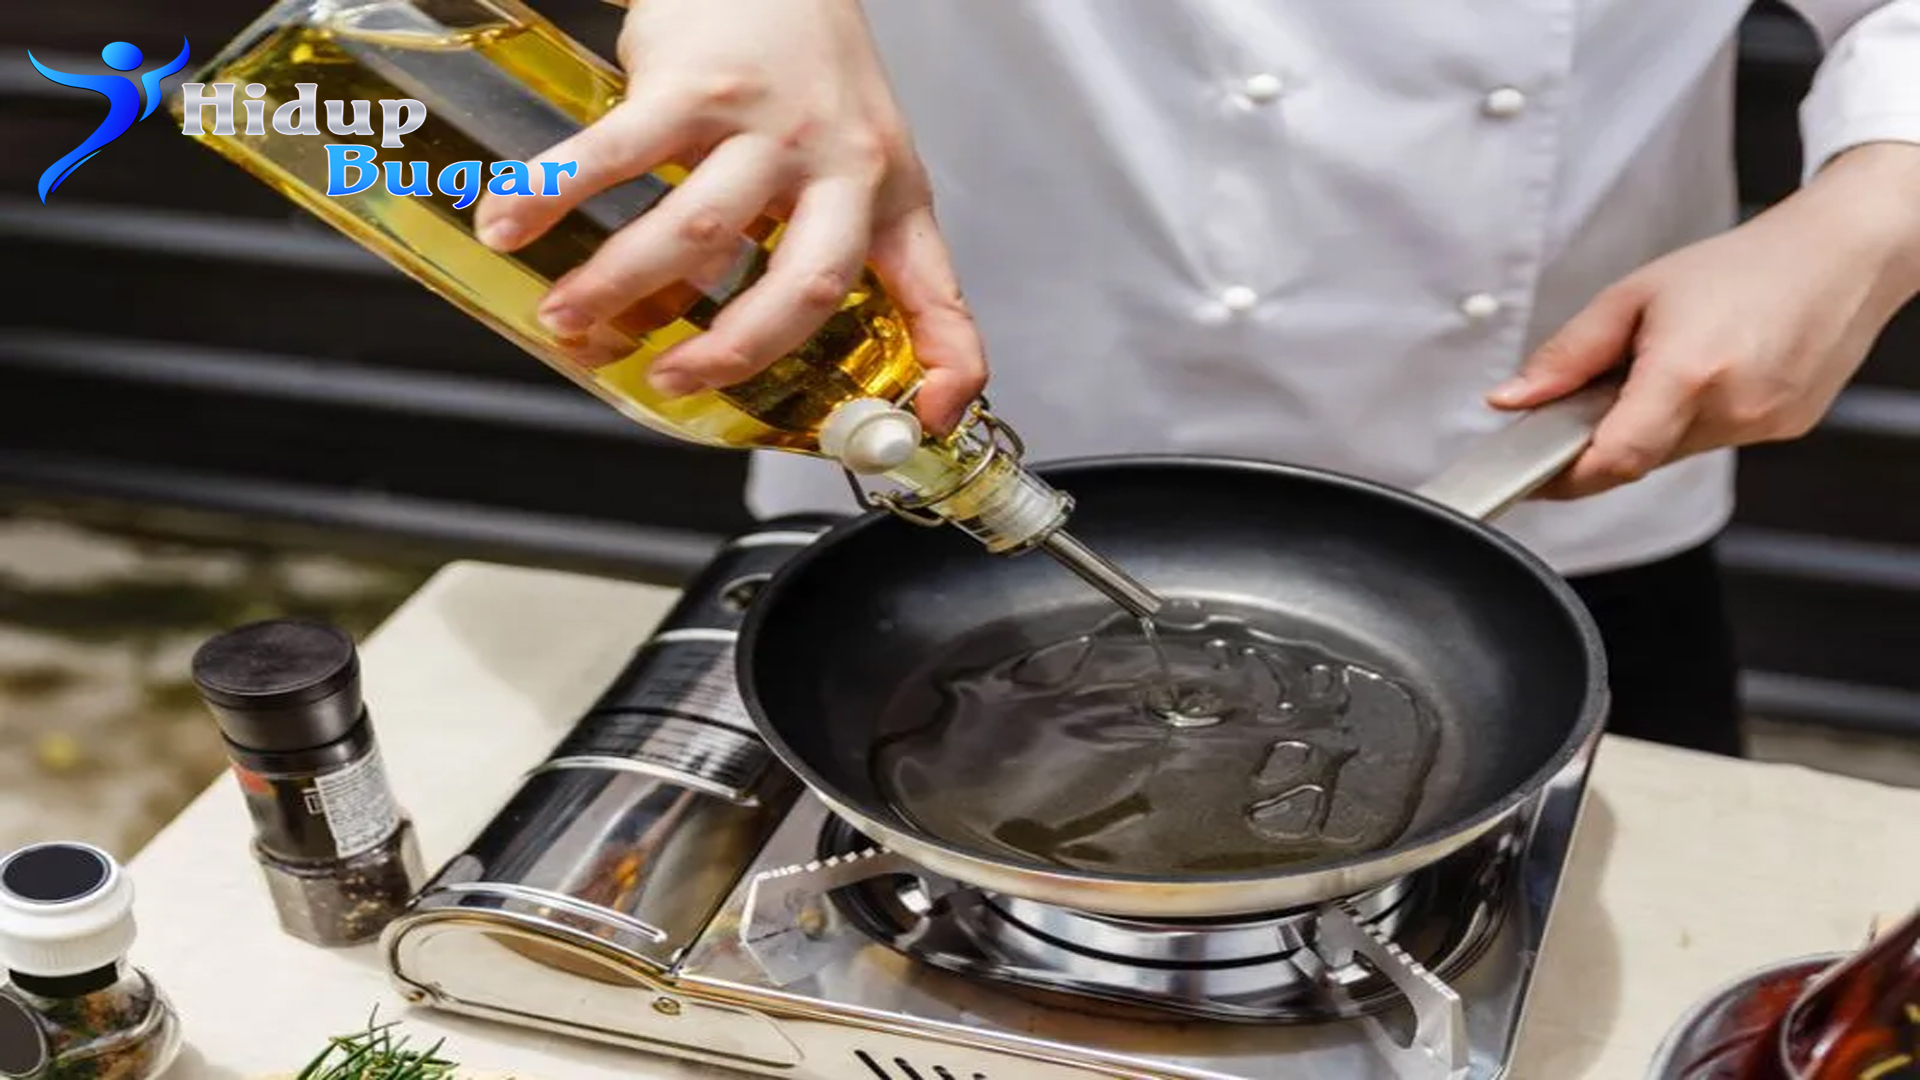 Kelebihan Mengolah Masakan Rumah bahan Minyak Zaitun